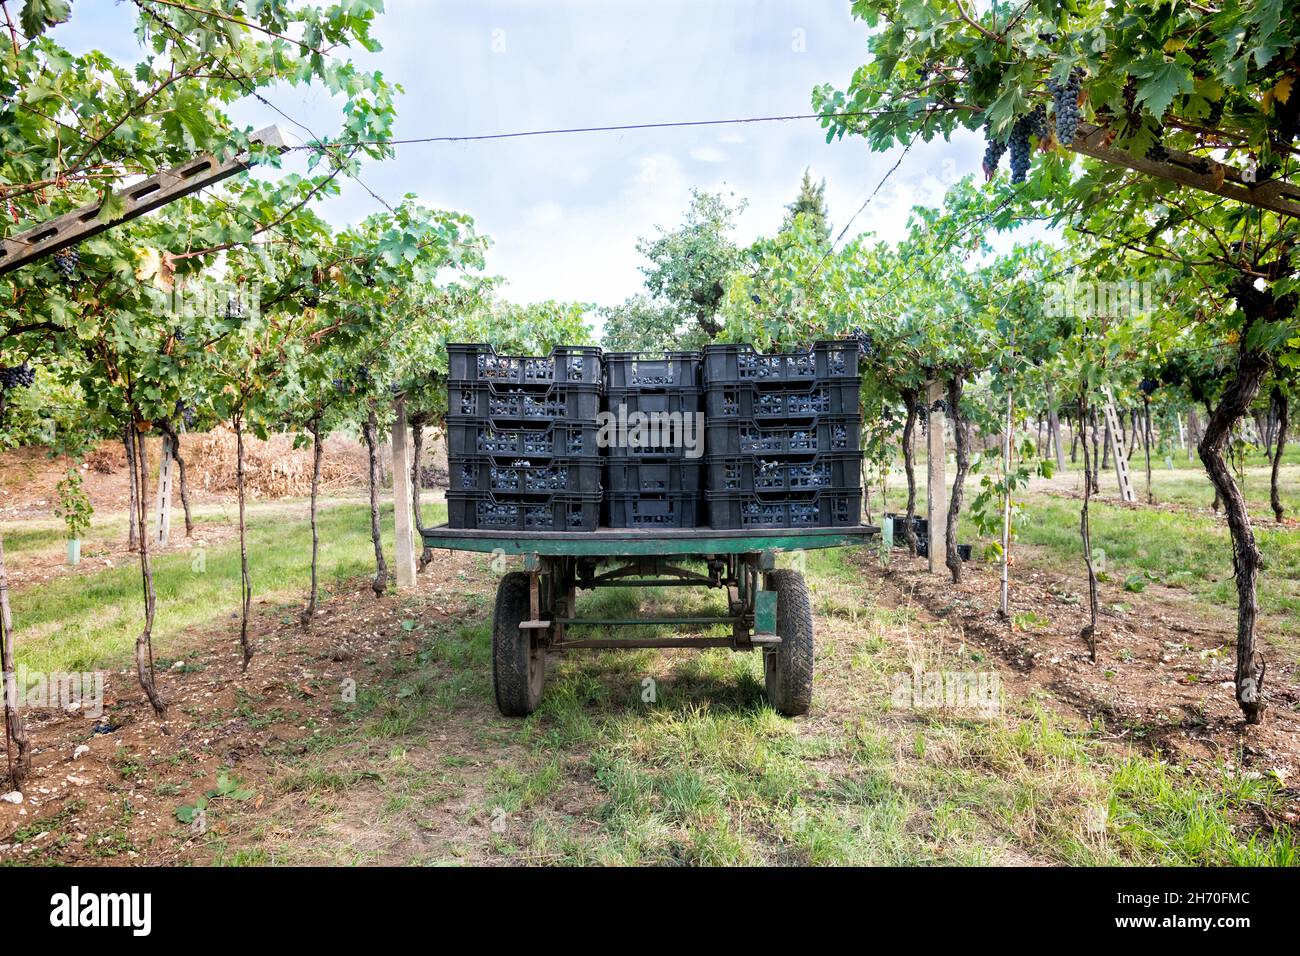 Remorque de ferme chargée de raisins noirs récoltés dans des caisses situées entre des rangées de vignes dans un vignoble dans un domaine viticole dans un conc viticole Banque D'Images